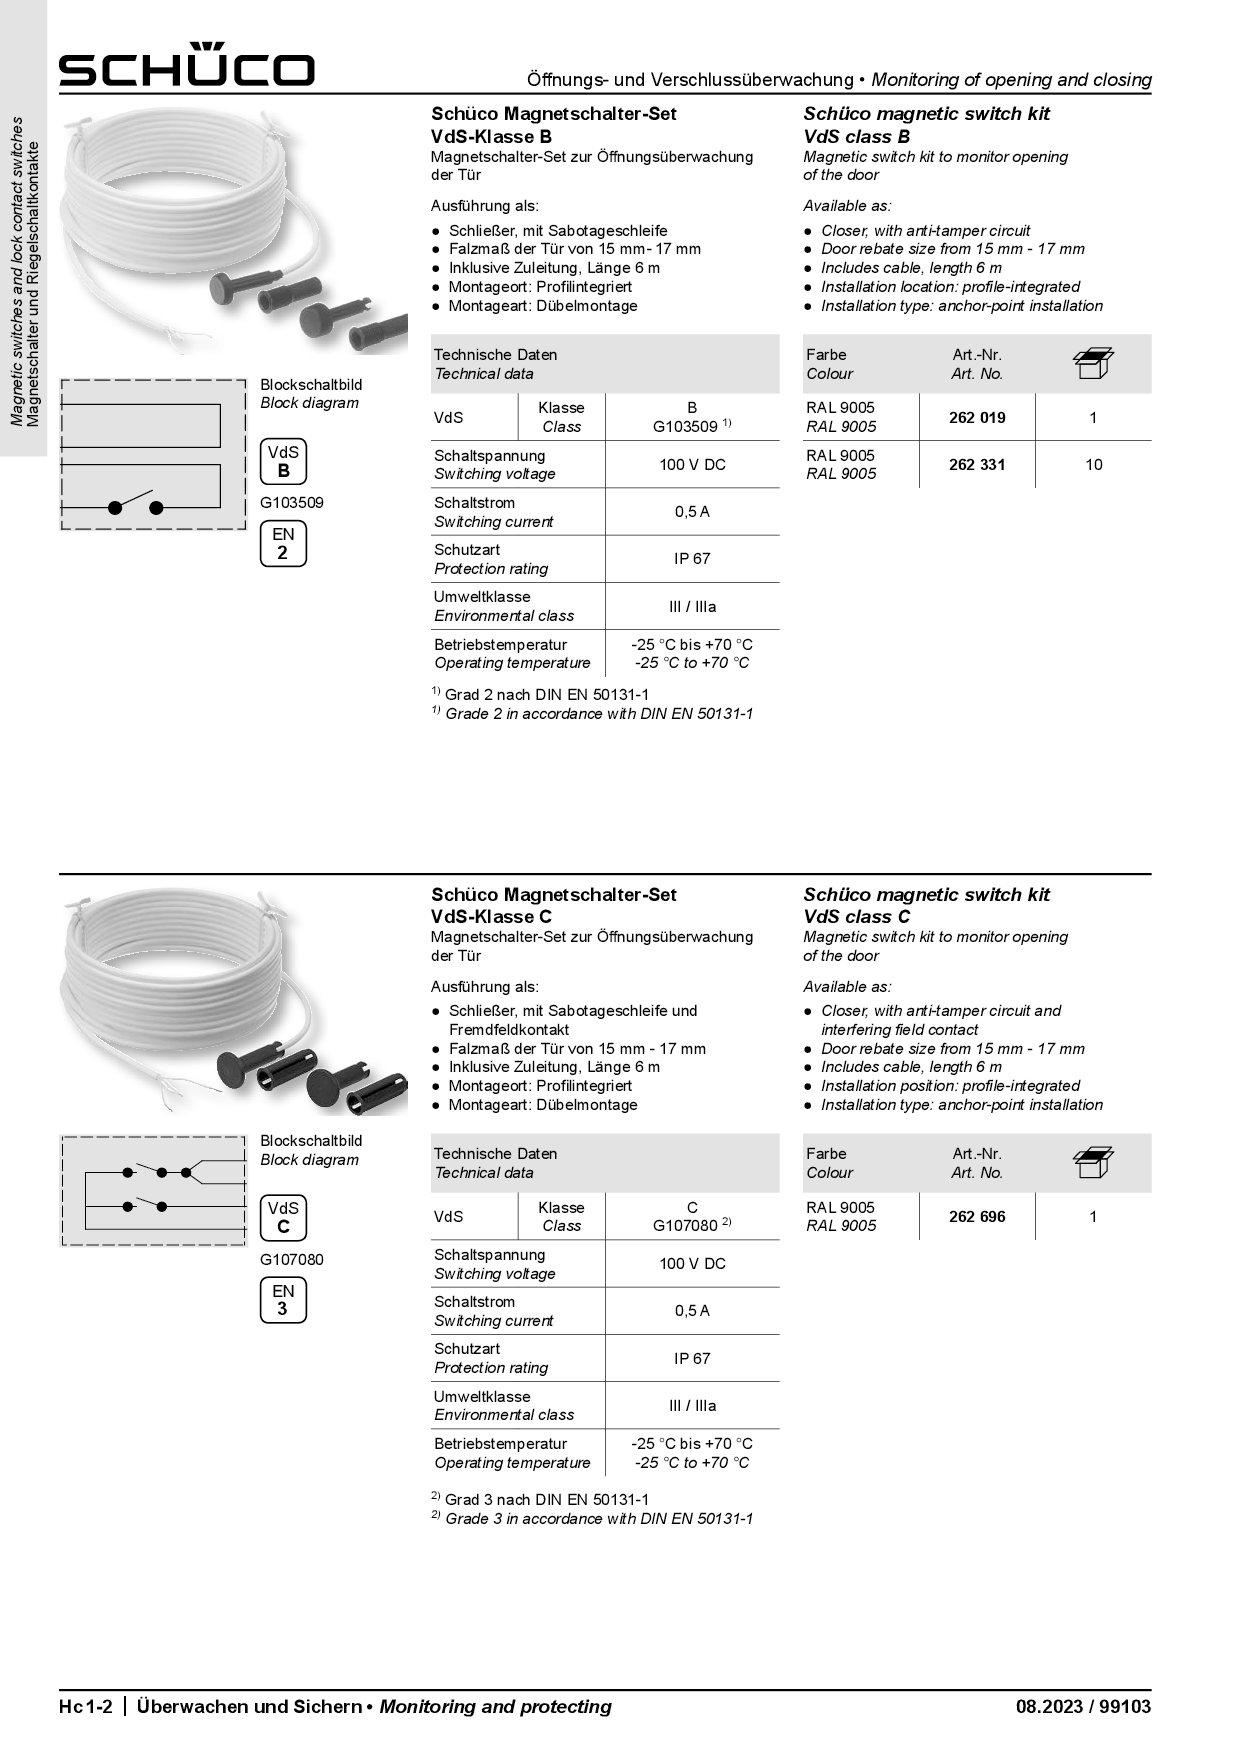 Schüco Magnetschalter-Set 262696, VdS-Klasse C